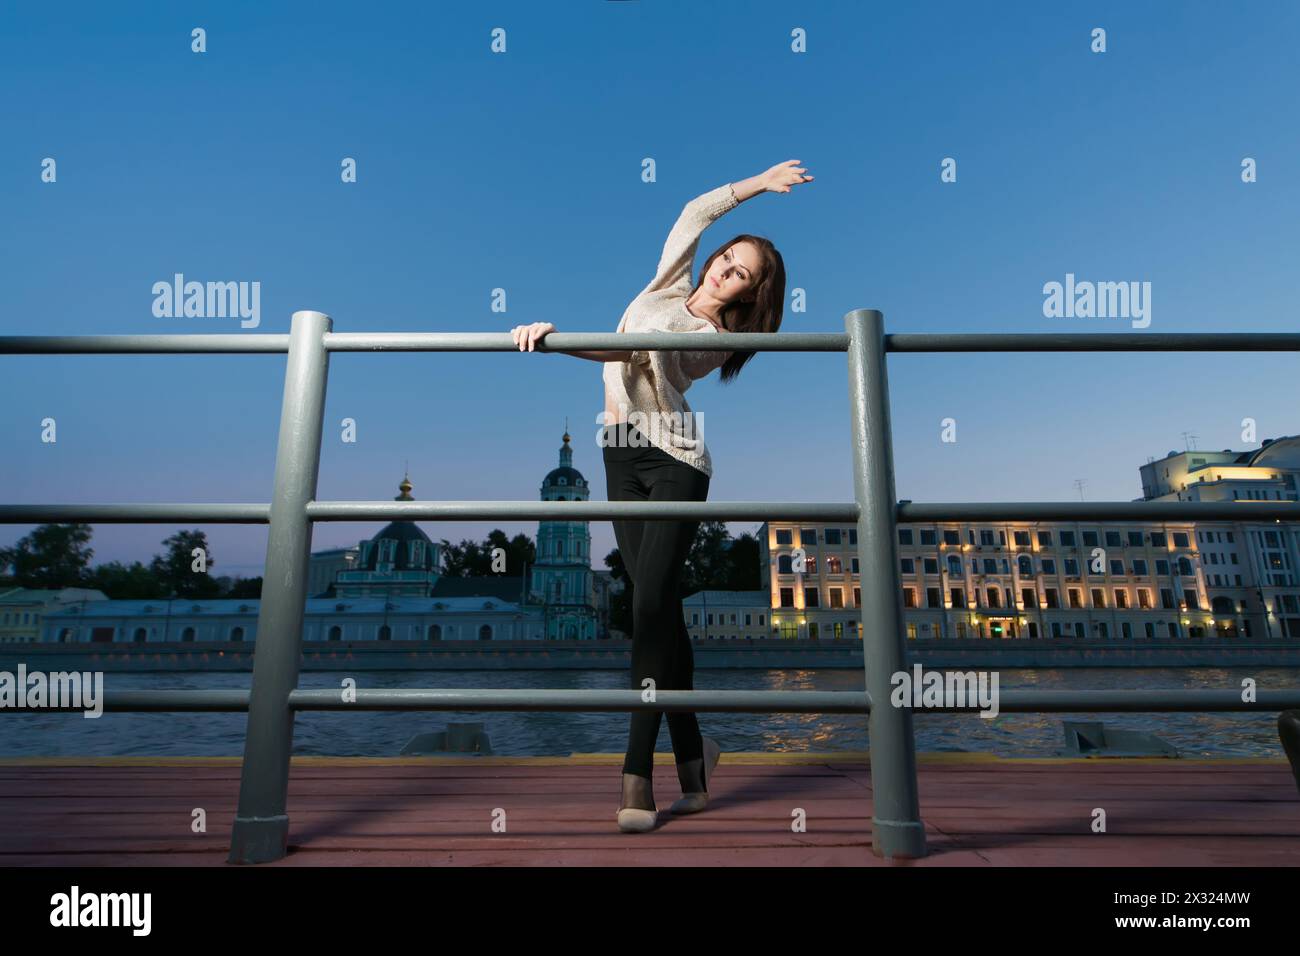 Una giovane donna è in piedi in una posizione di balletto usando come sbarra la ringhiera sul lungomare Foto Stock